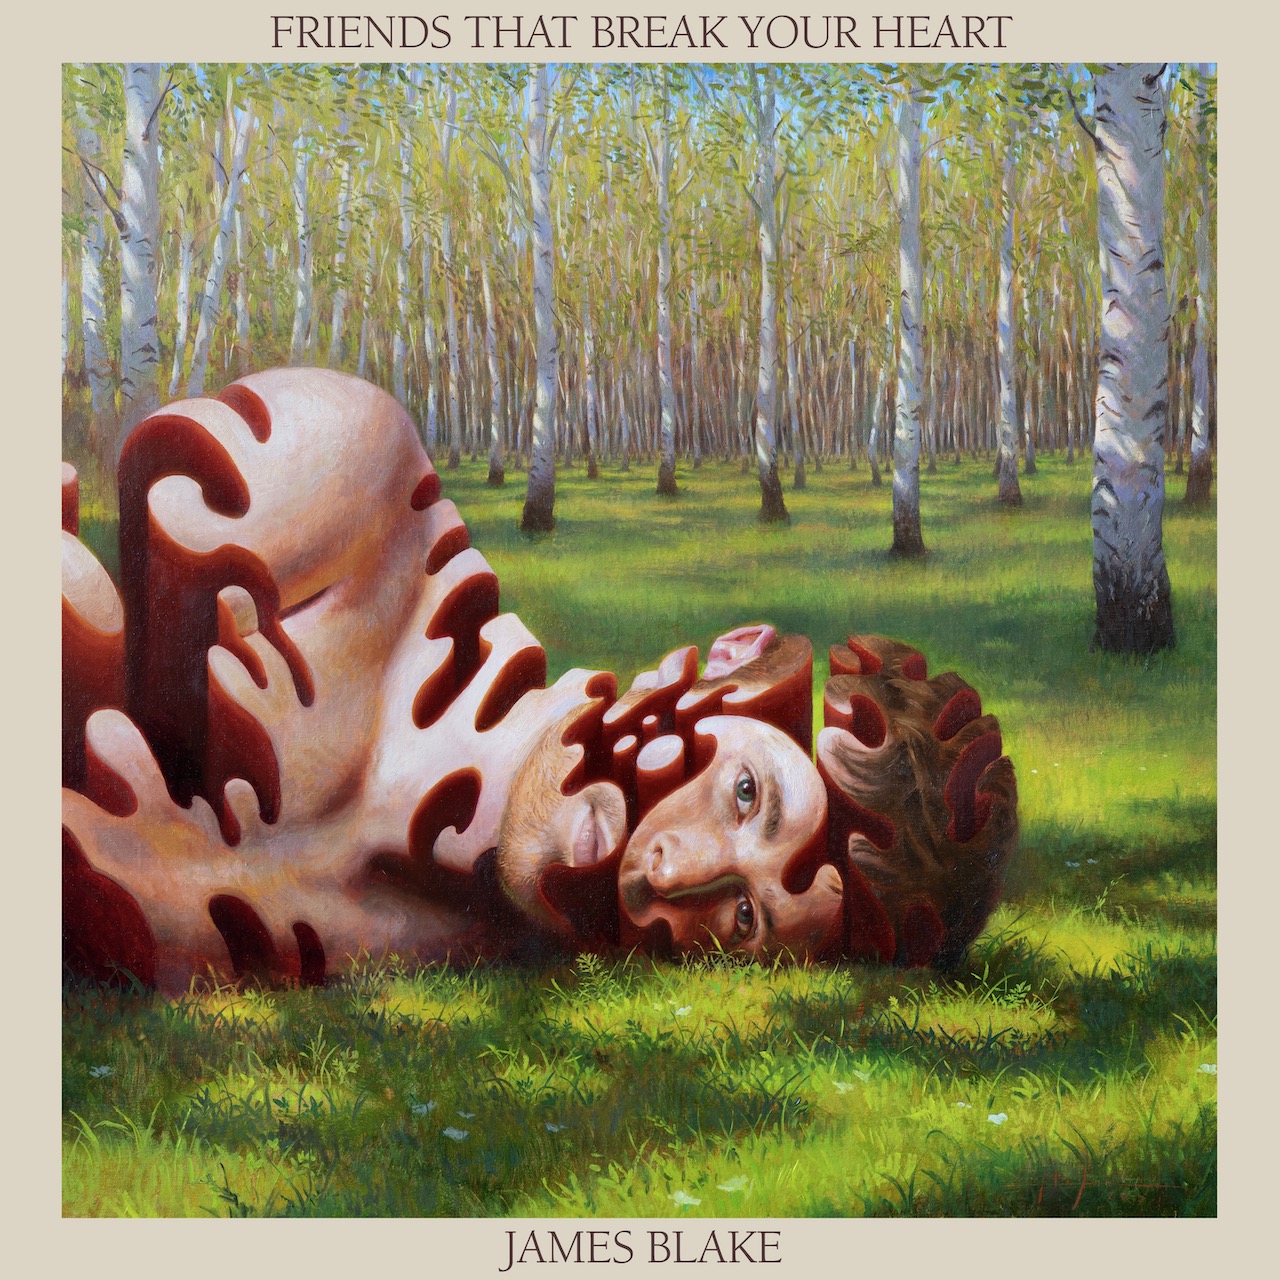 James Blake "Friends that break your heart" Albumcover und Pressebilder